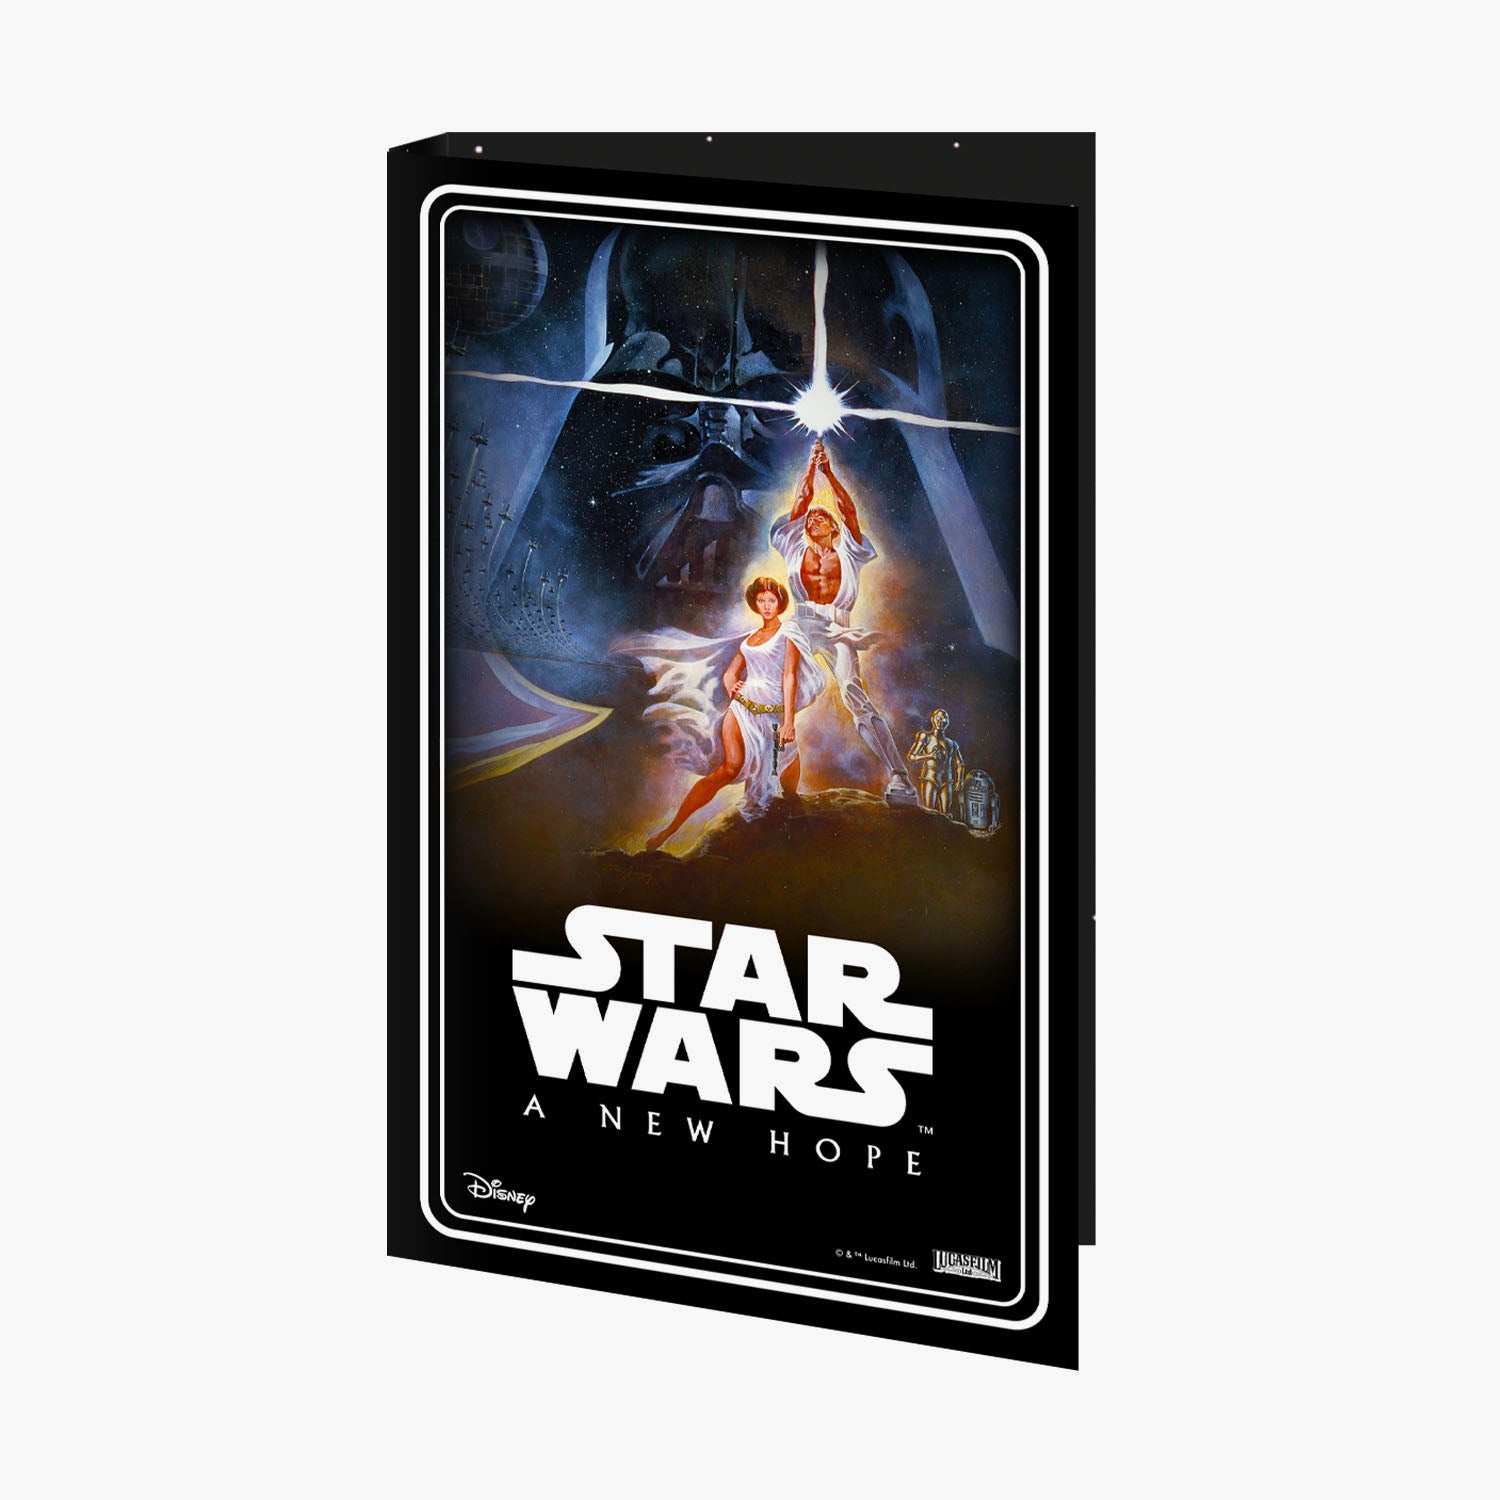 Collection complète du 45e anniversaire de Star Wars A New Hope